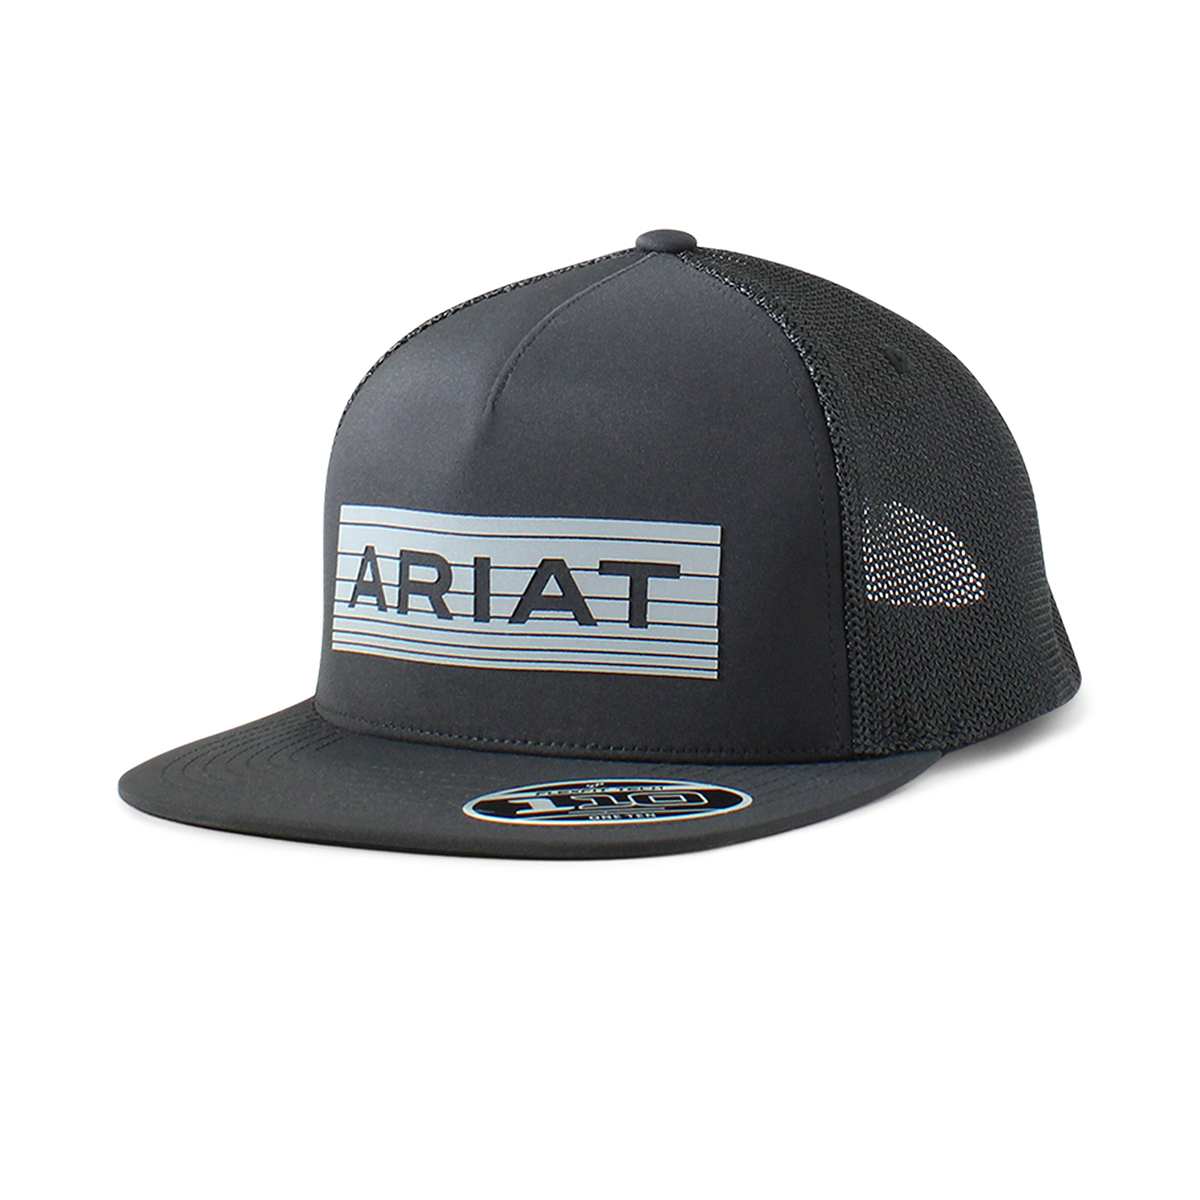 Ariat Mens Flexfit 110 Snapback Cap - Reflect Black